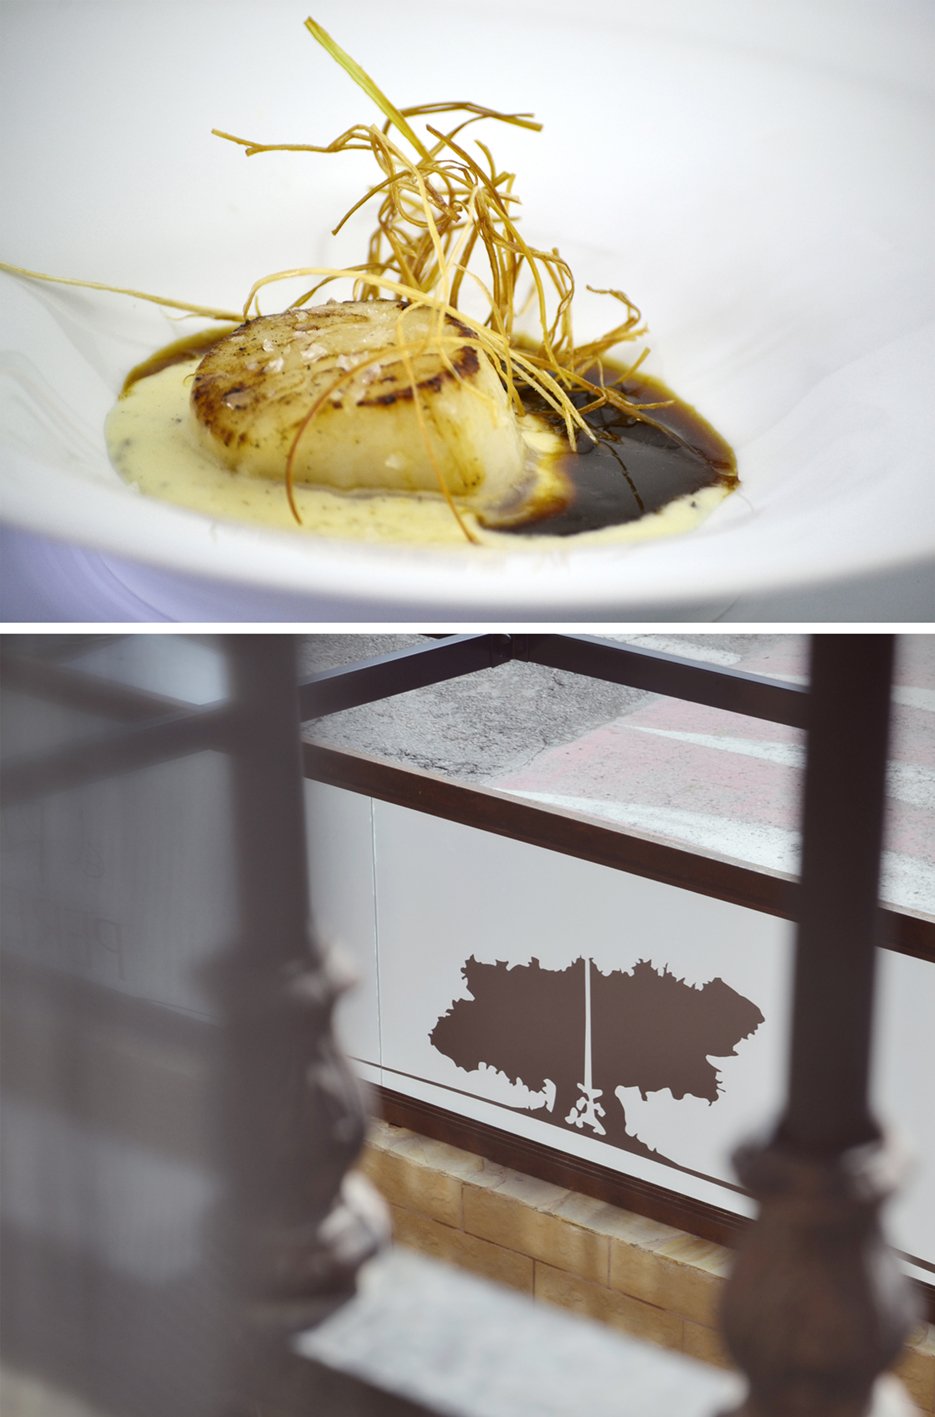 Dos imágenes: la de arriba es una imagen detalle de un plato del restaurante y la de abajo la imagen del vinilo de la ventana.